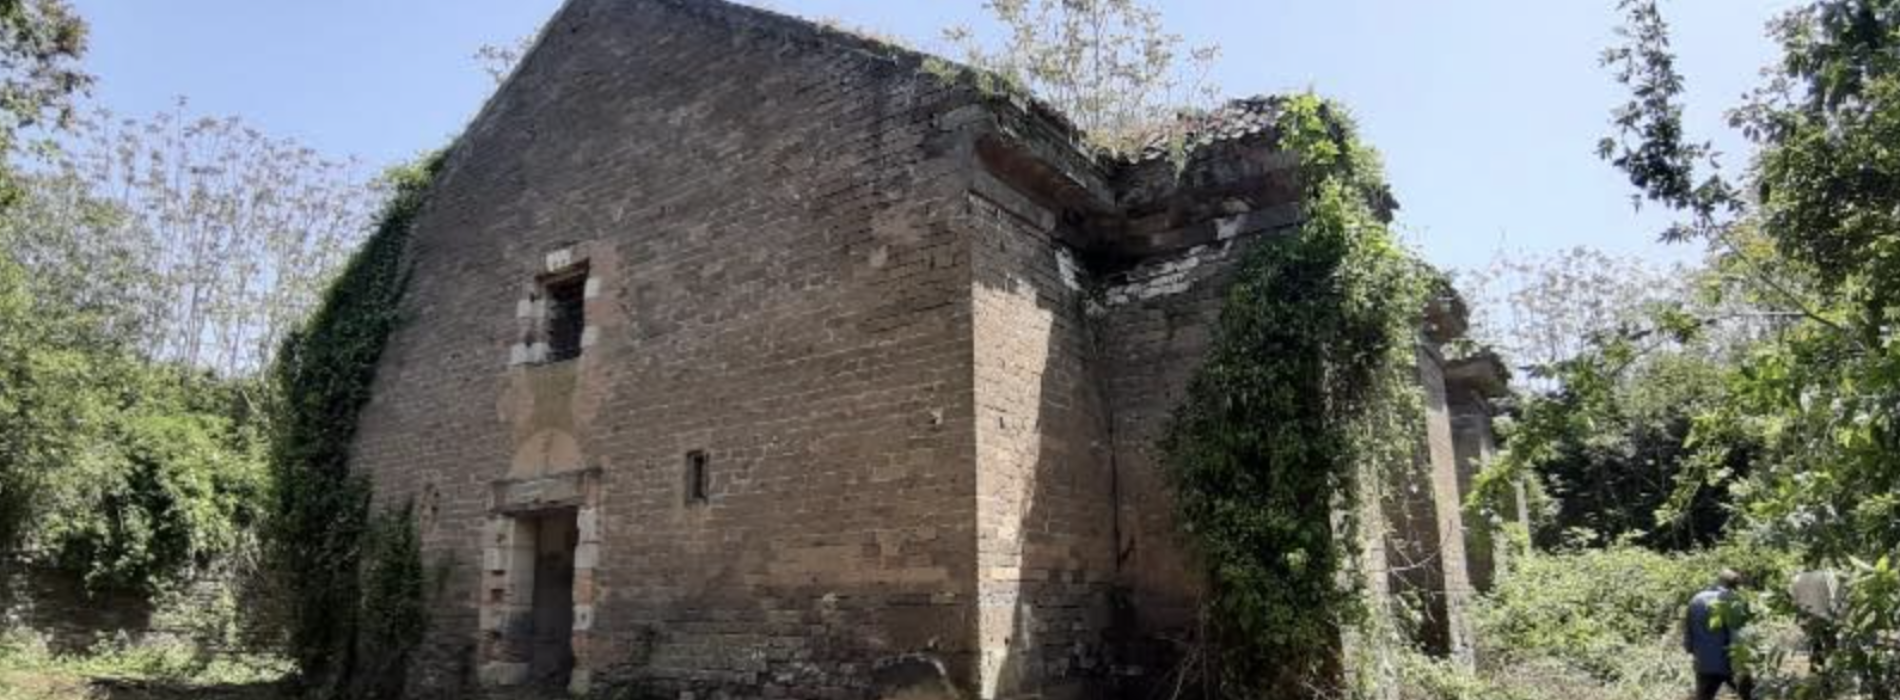 Capua. Recupero del Bastione Gran Maestrato di San Lazzaro